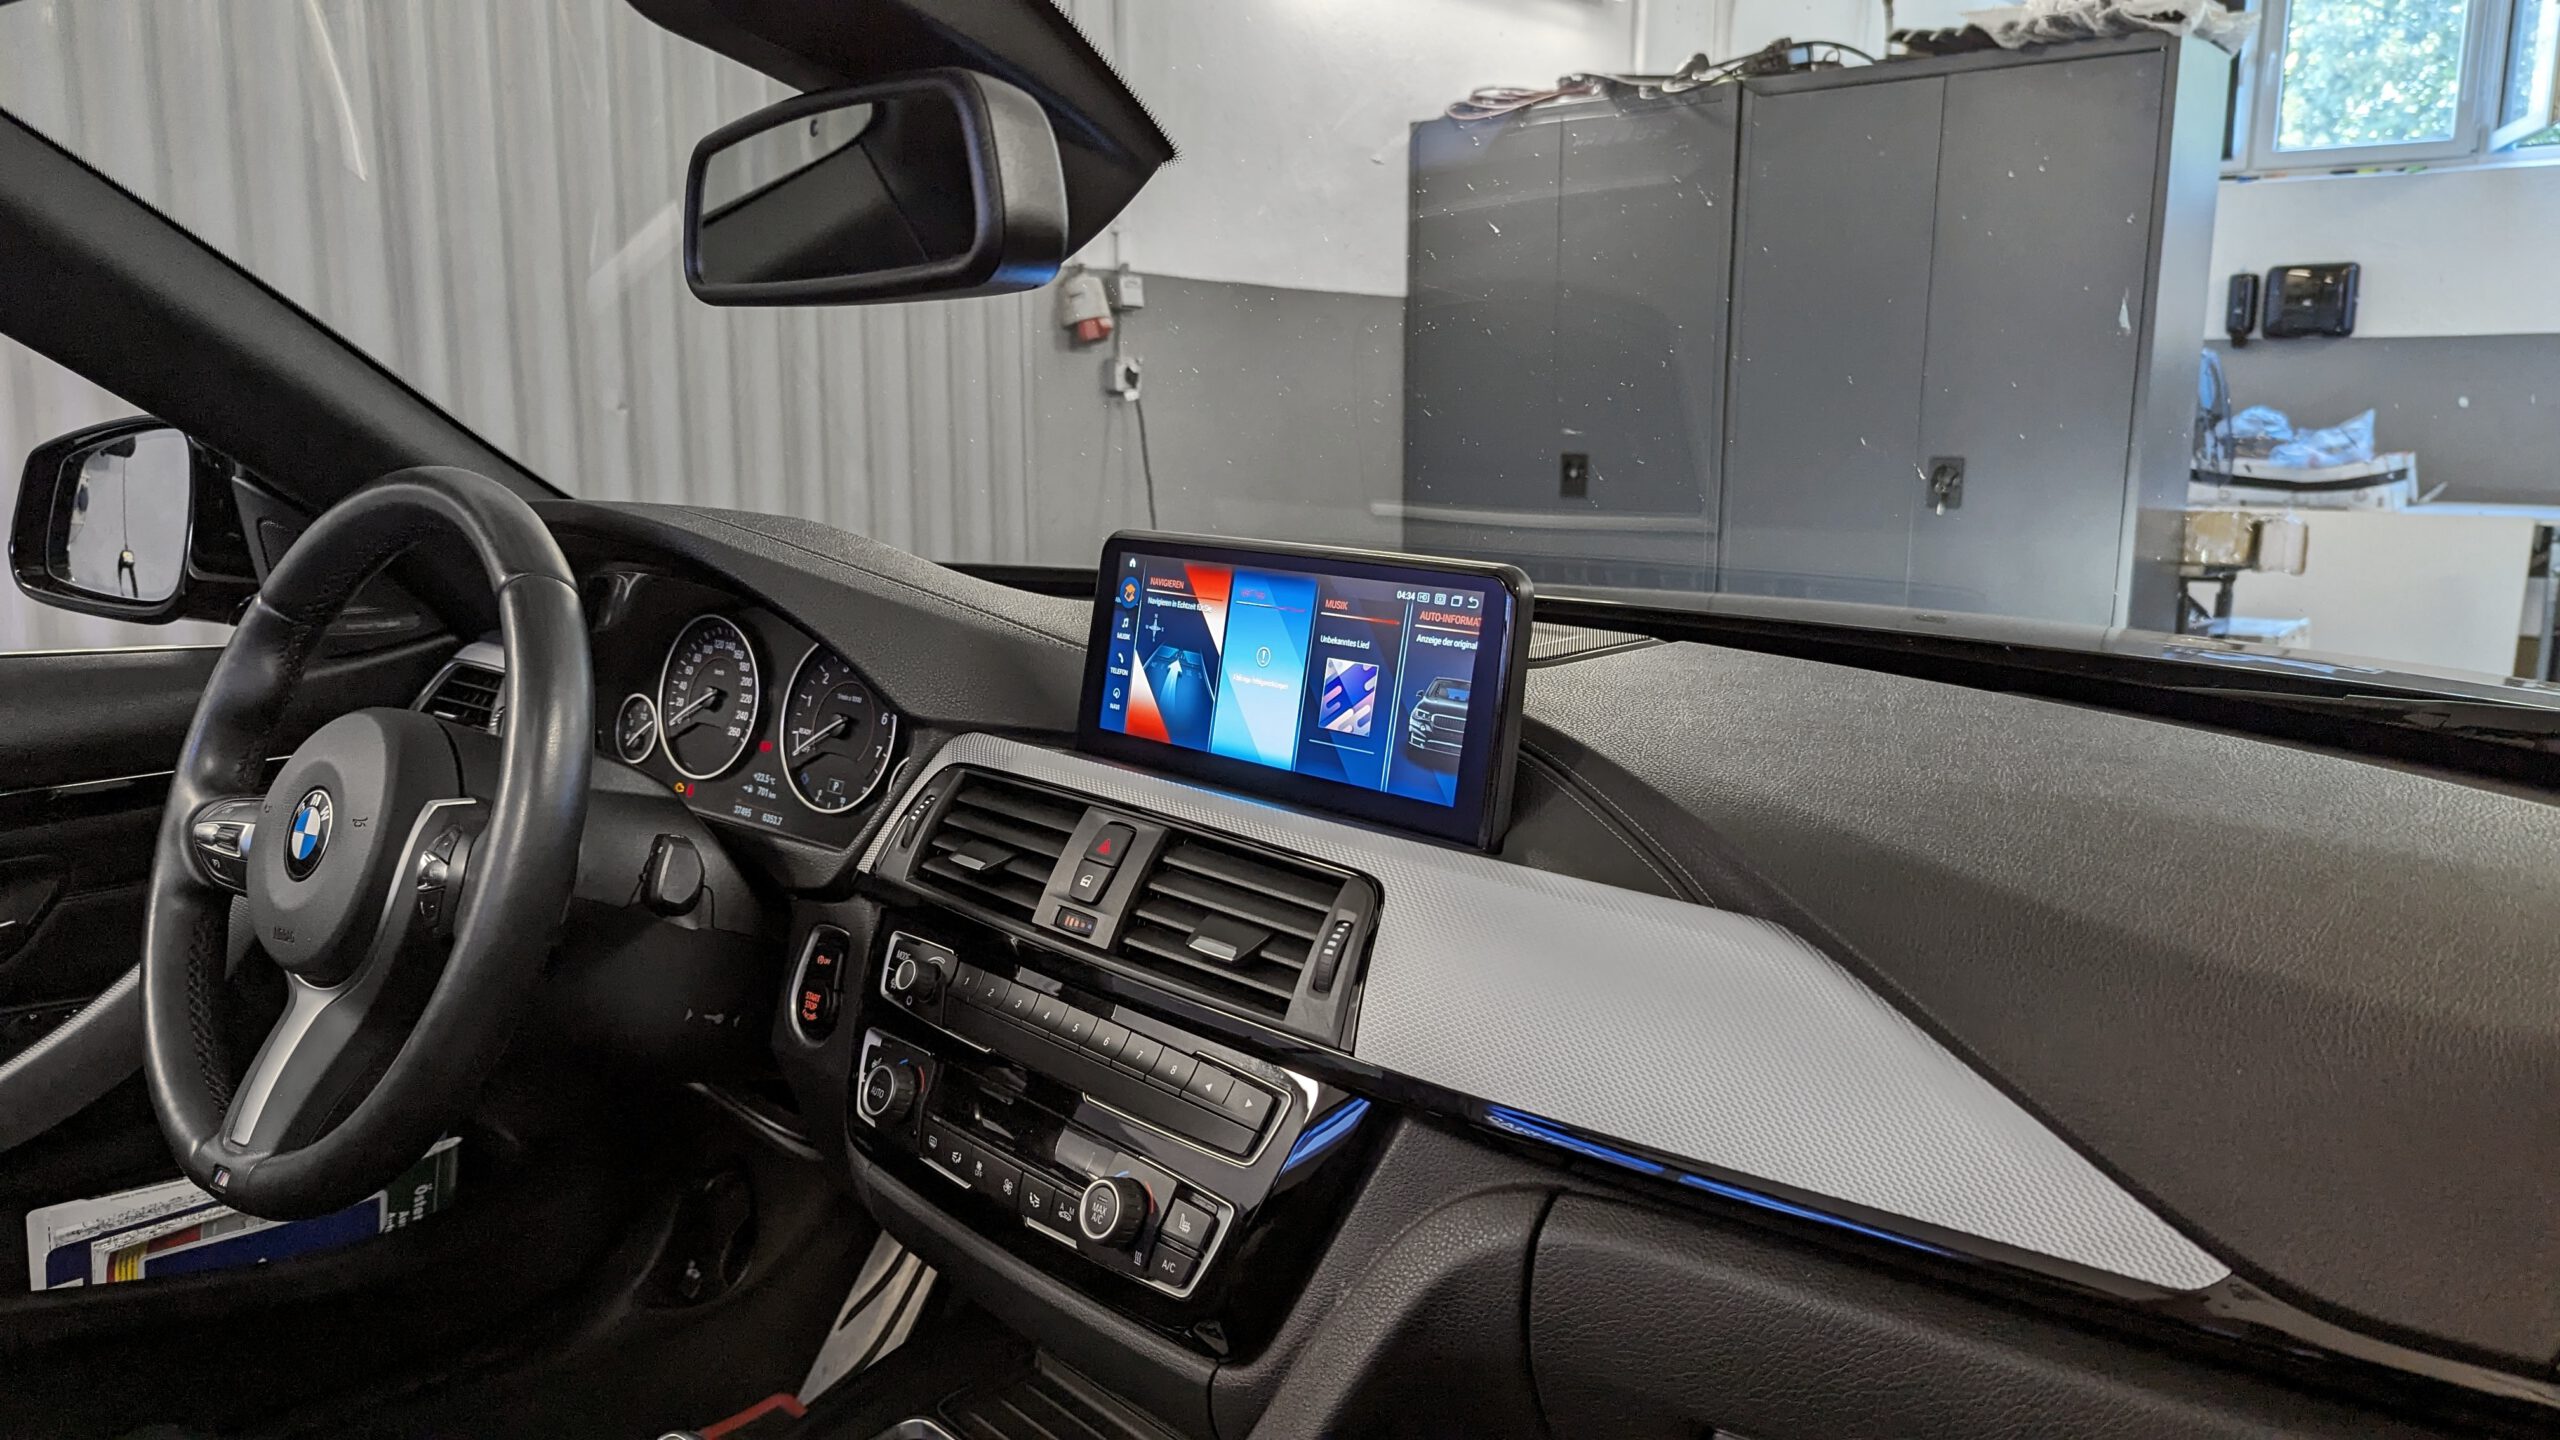 Apple-CarPlay & Android-Auto nachrüsten für BMW 5er E60 E61 - CarHex